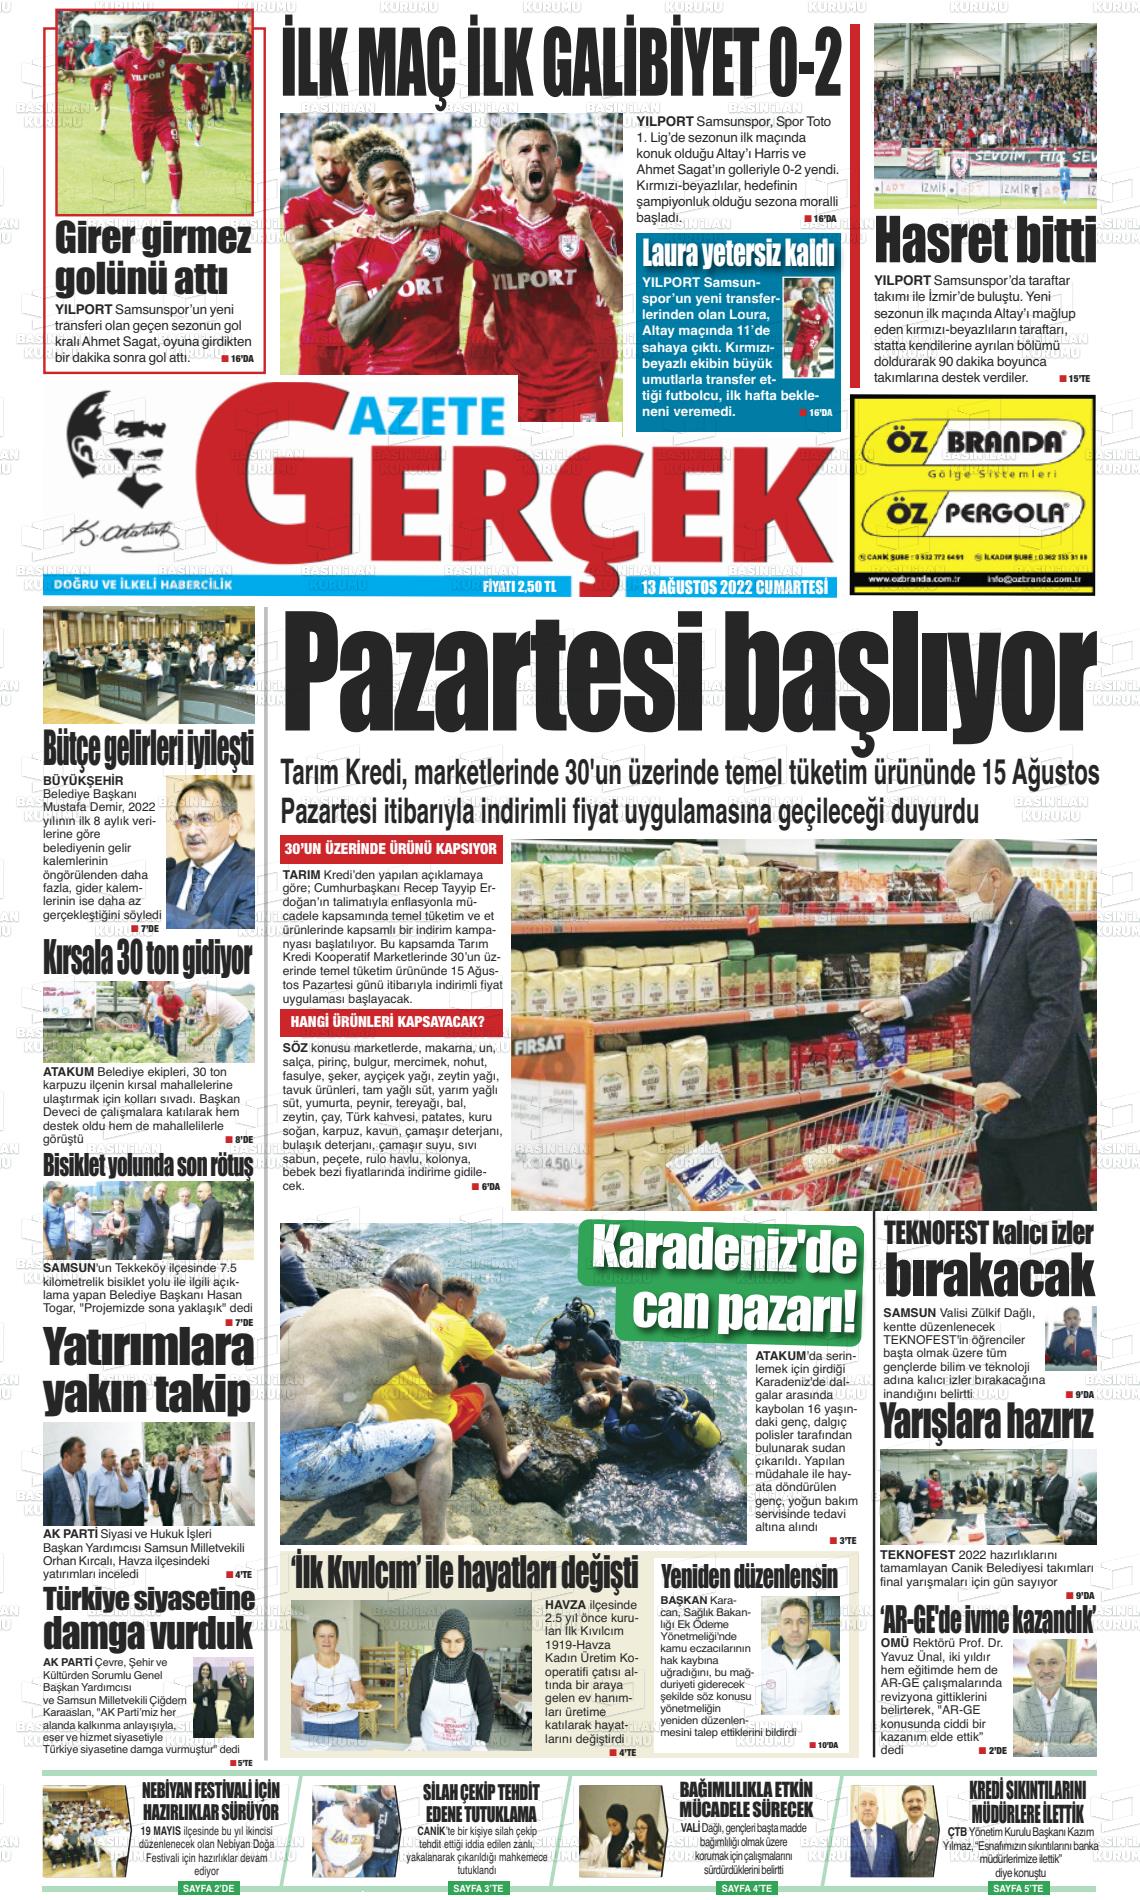 Gazete Gerçek Gazete Manşeti